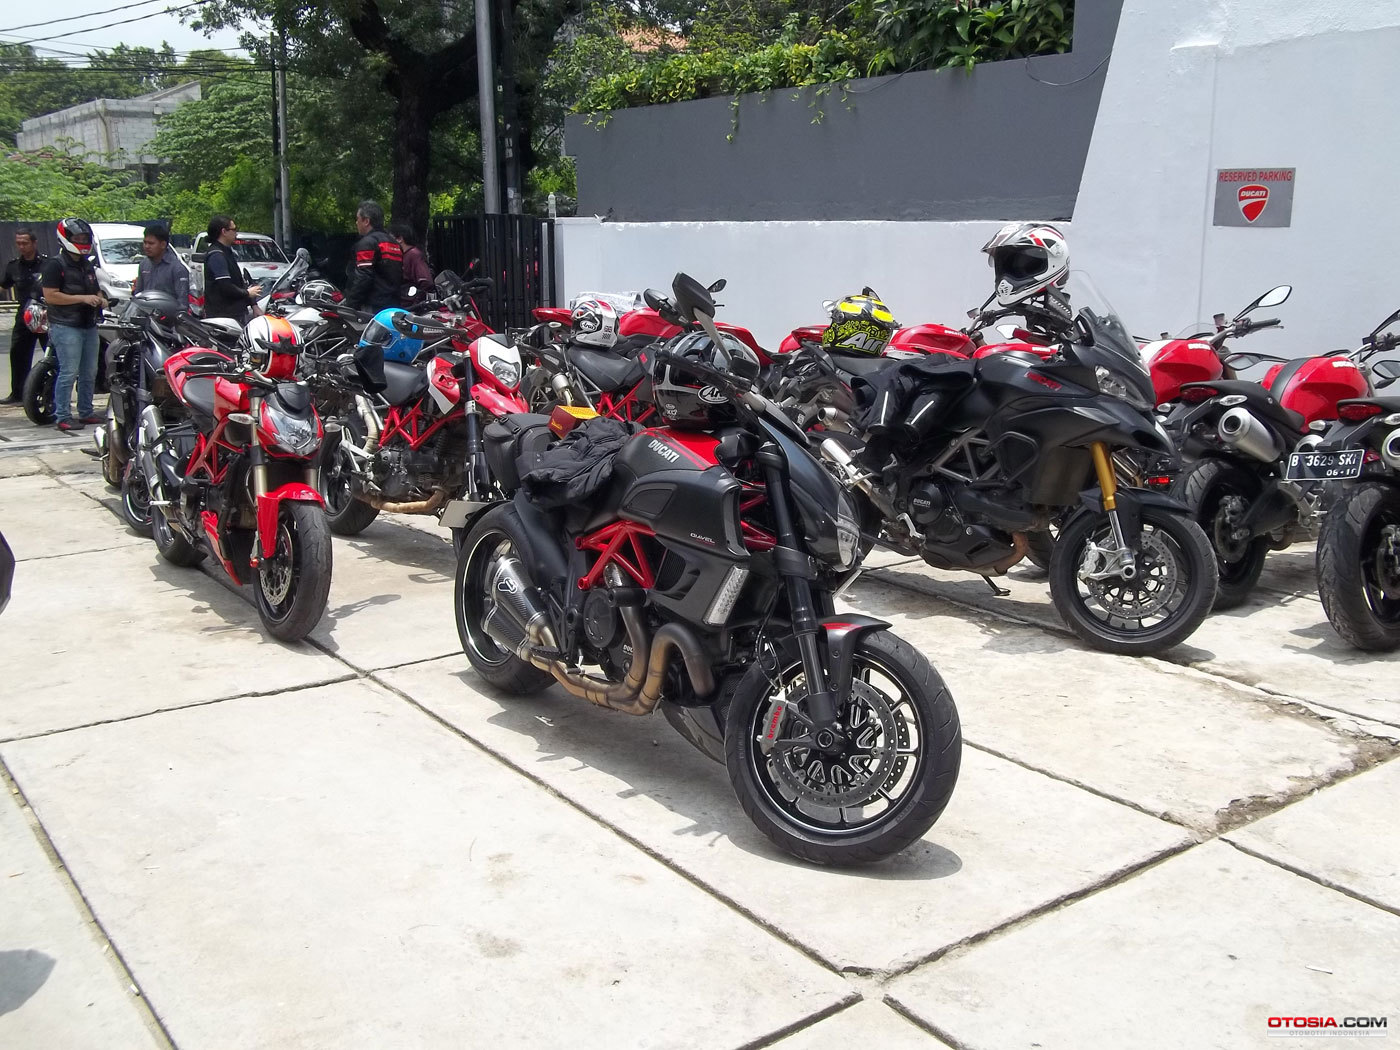 Ducati Rakitan Indonesia Berkode NIK Merdekacom